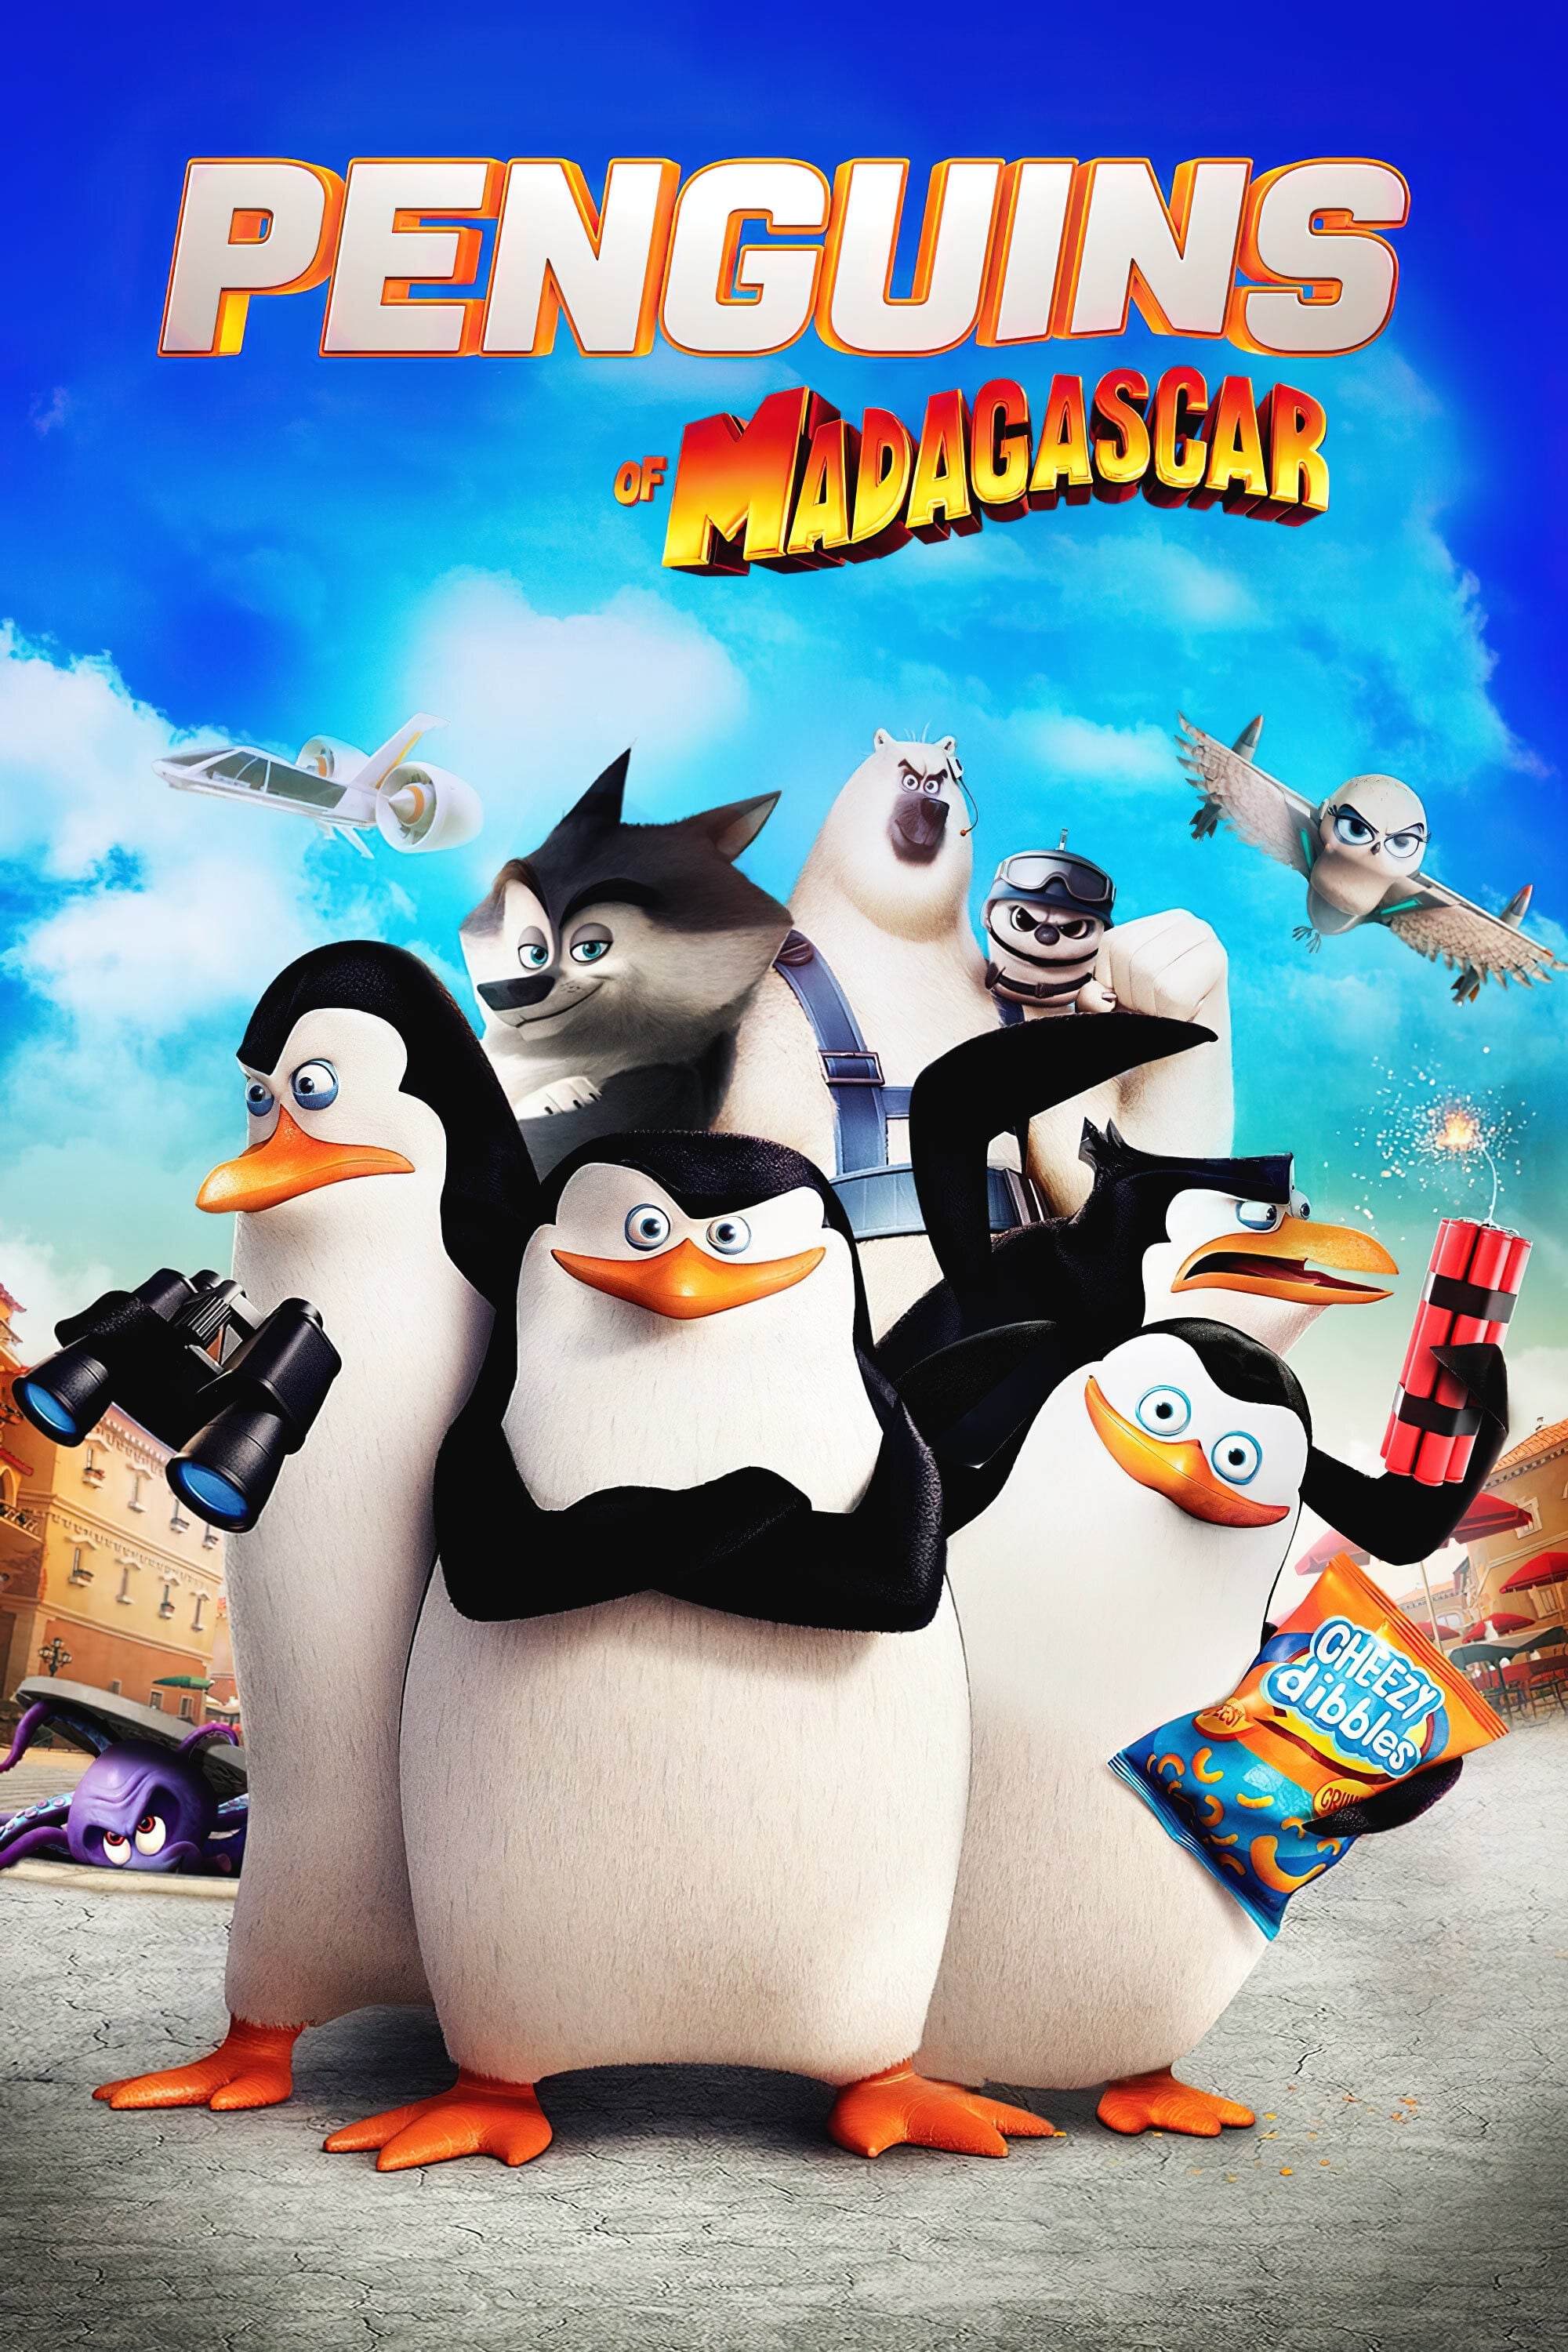 Los pingüinos de Madagascar (2014)